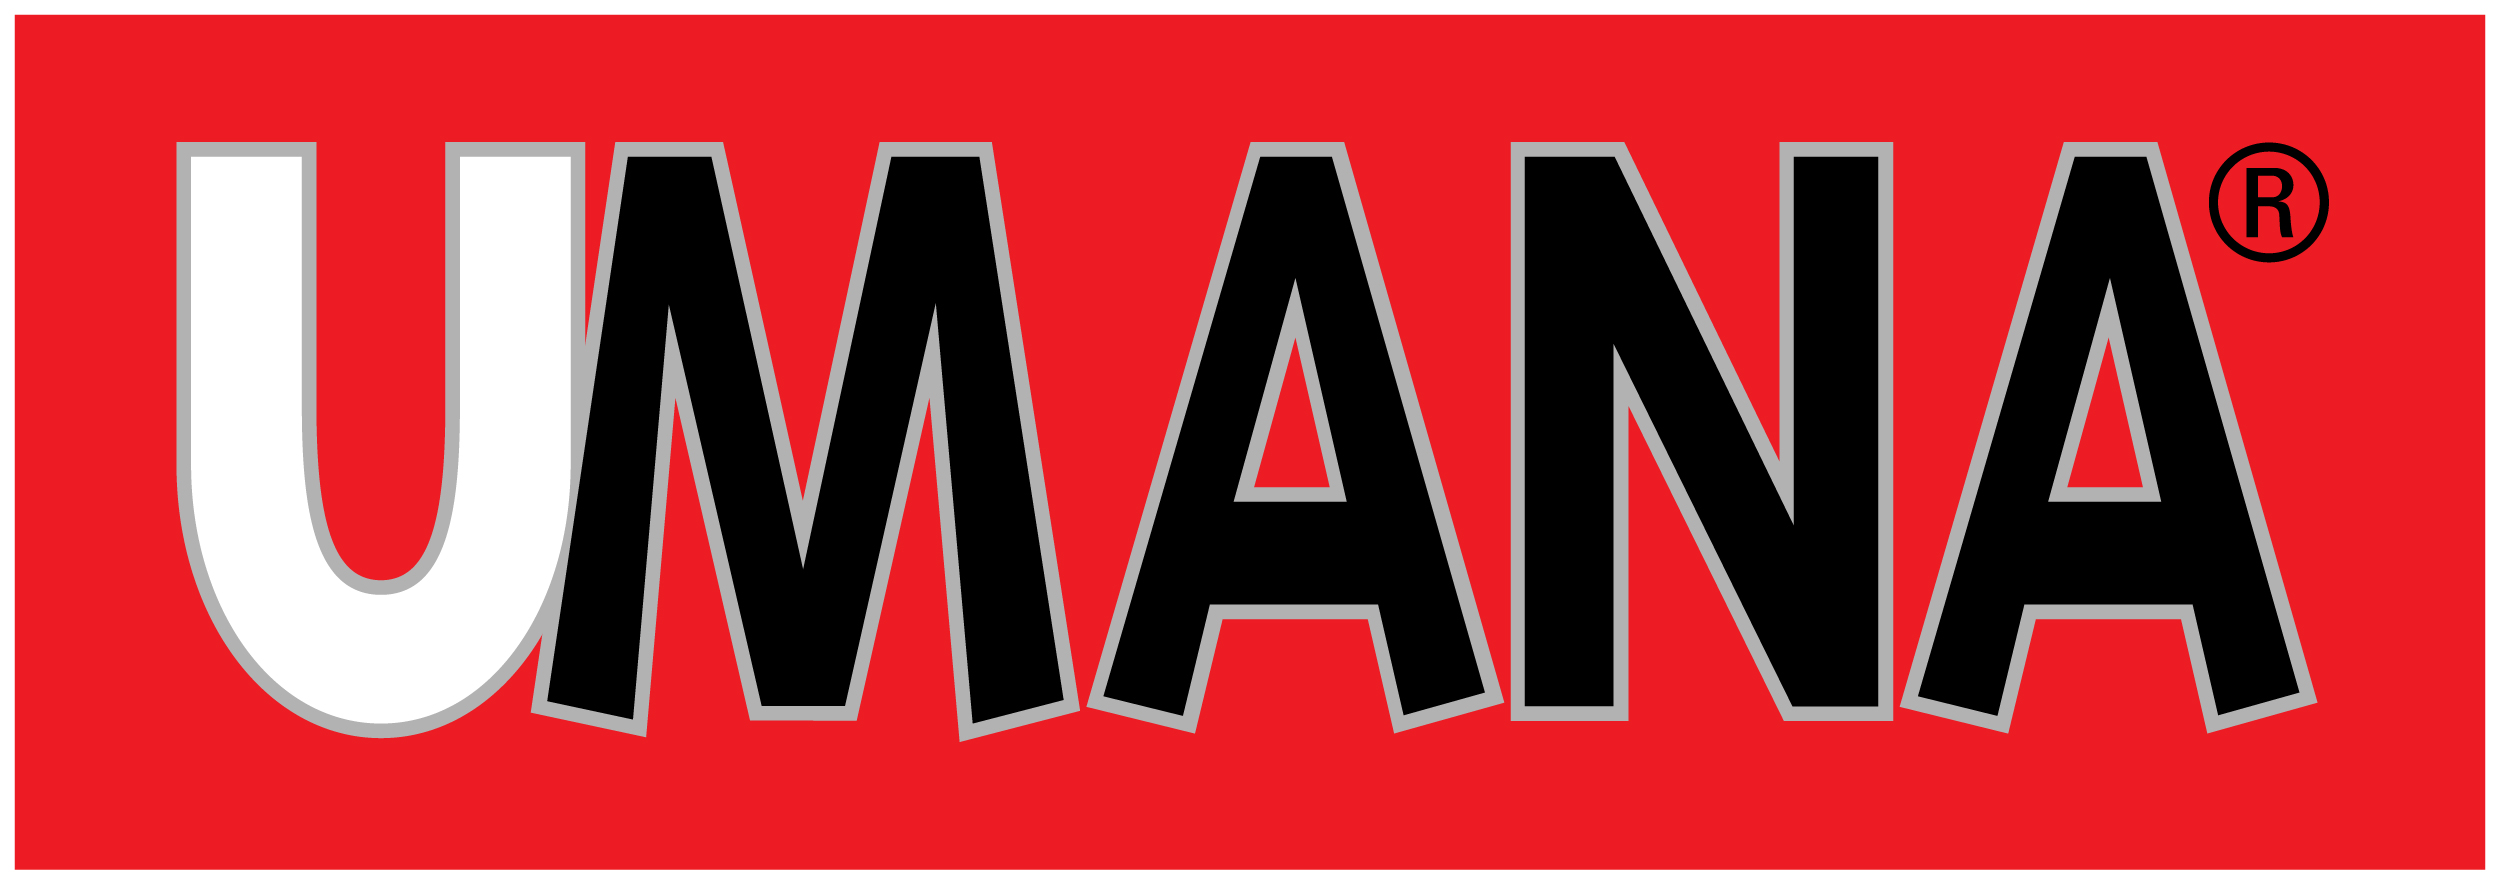 UMANA_logo